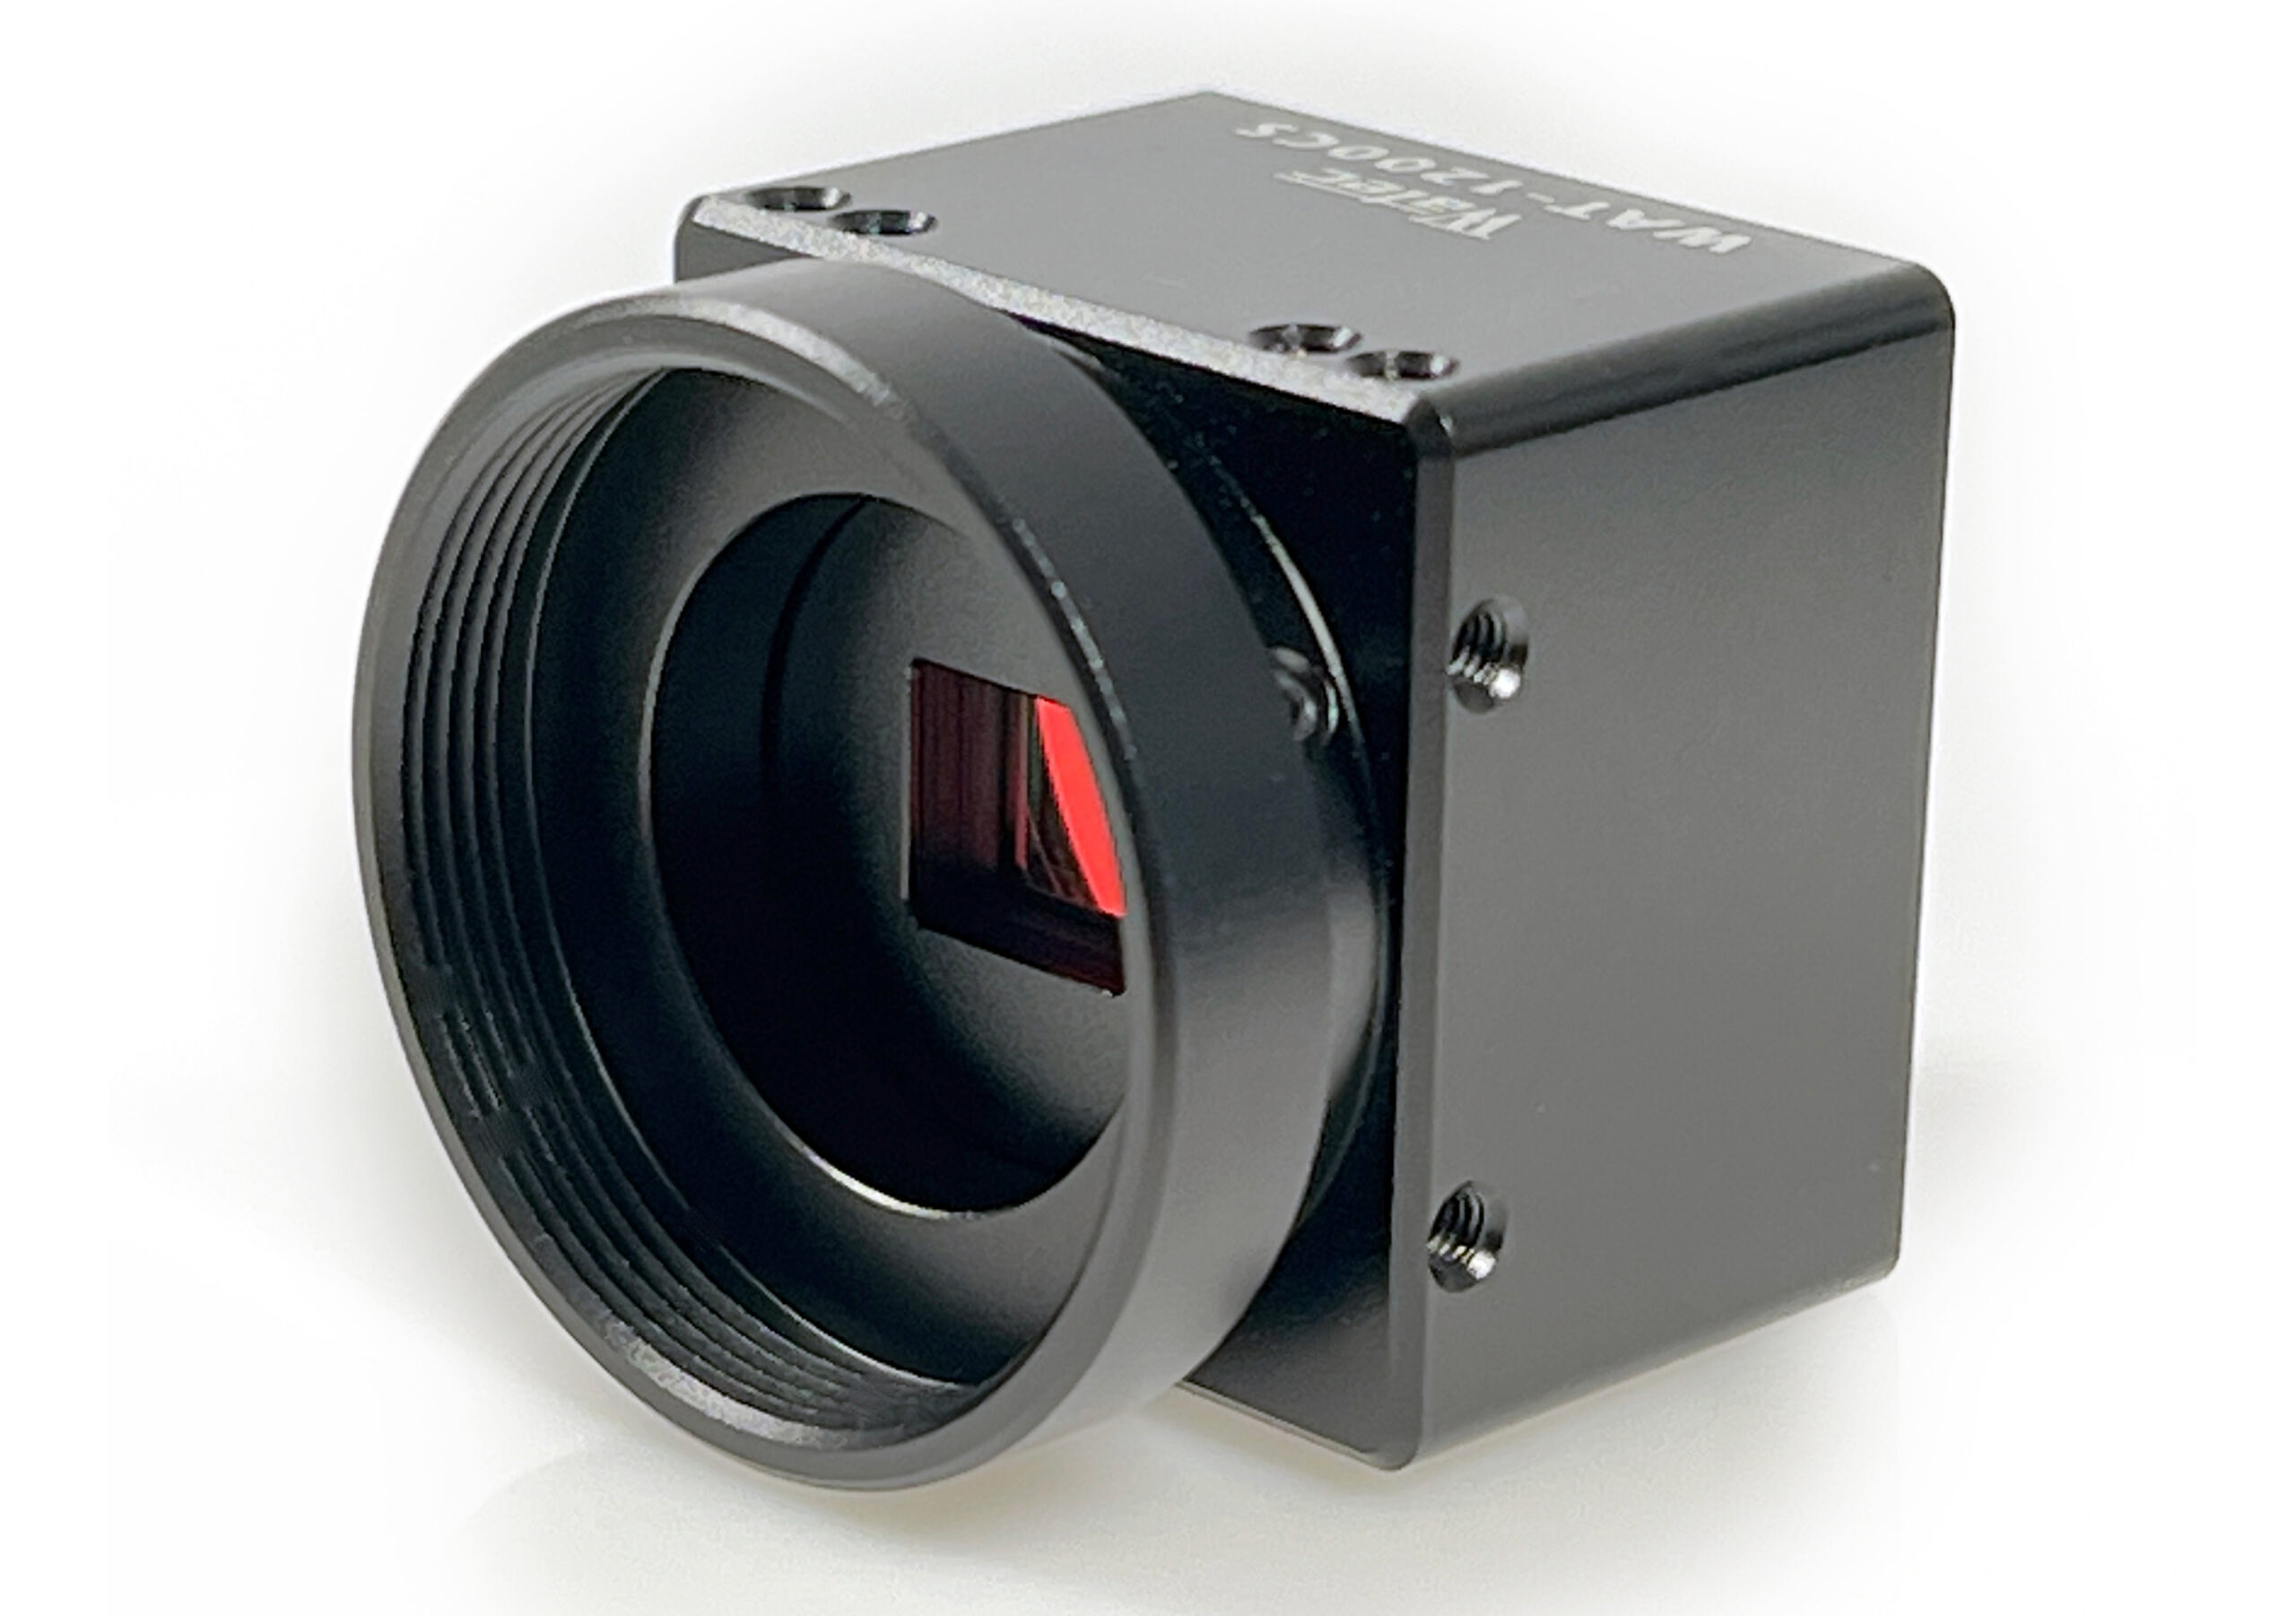 WAT-1200CS Camera